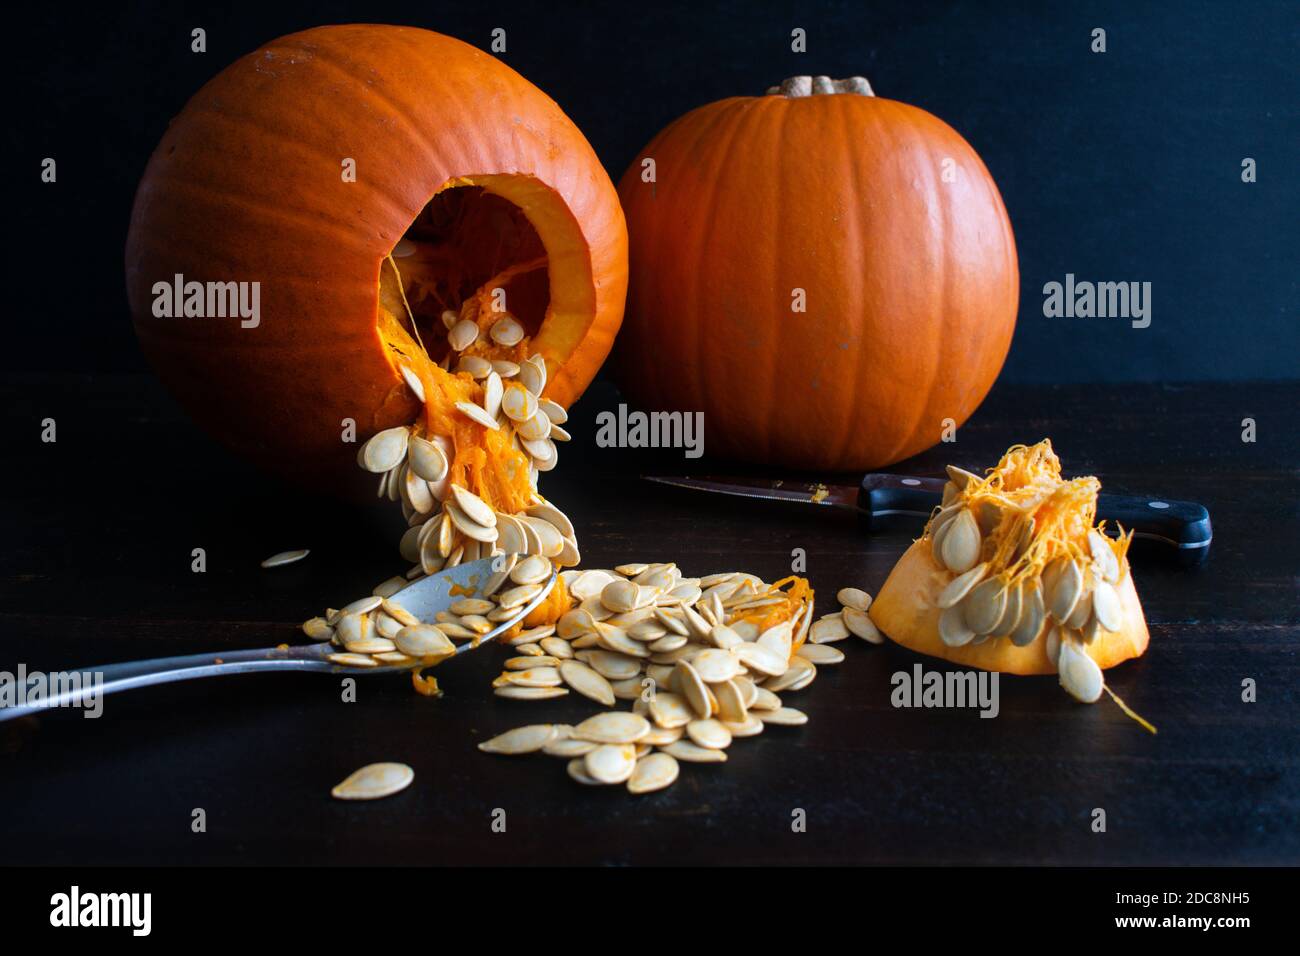 Zucche a torta immagini e fotografie stock ad alta risoluzione - Alamy